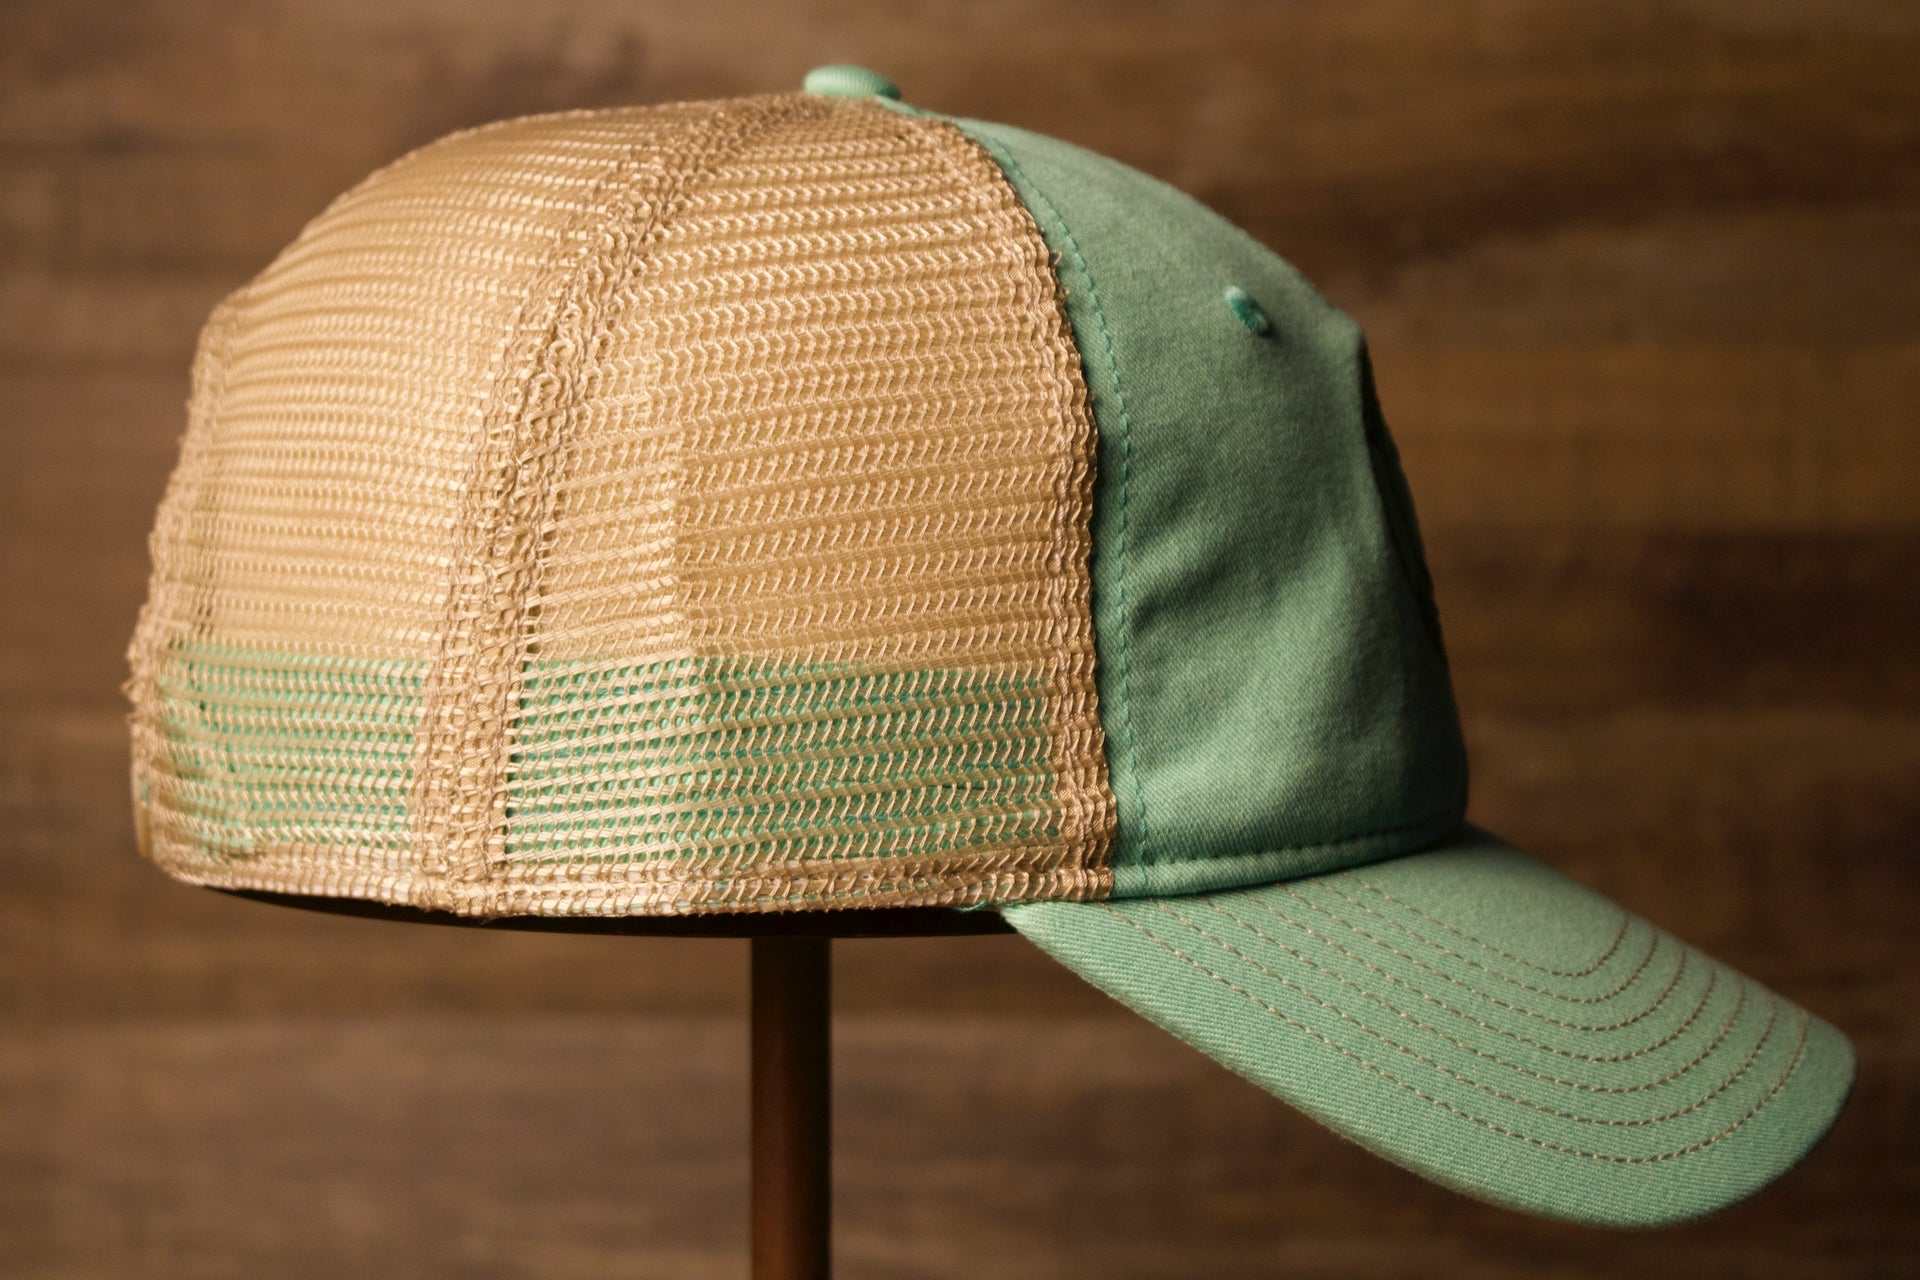 Wildwood New Jersey Mint Green / Khaki Mesh-Back Trucker Hat the wearers right side is a trucker style 